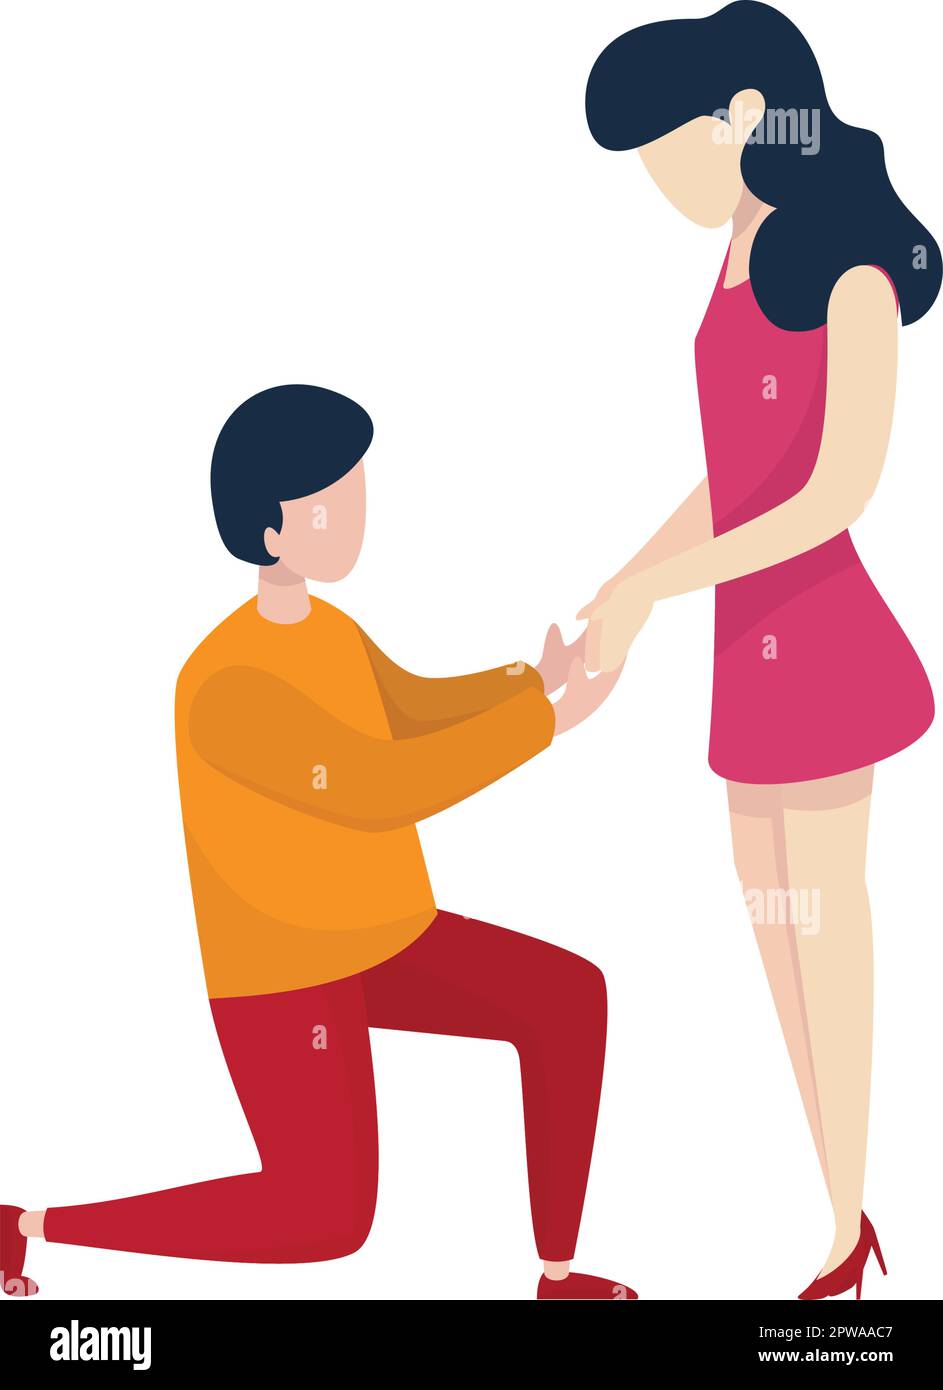 Romantique Homme en bas sur un genou et proposer à la femme visualisé avec une illustration simple Illustration de Vecteur